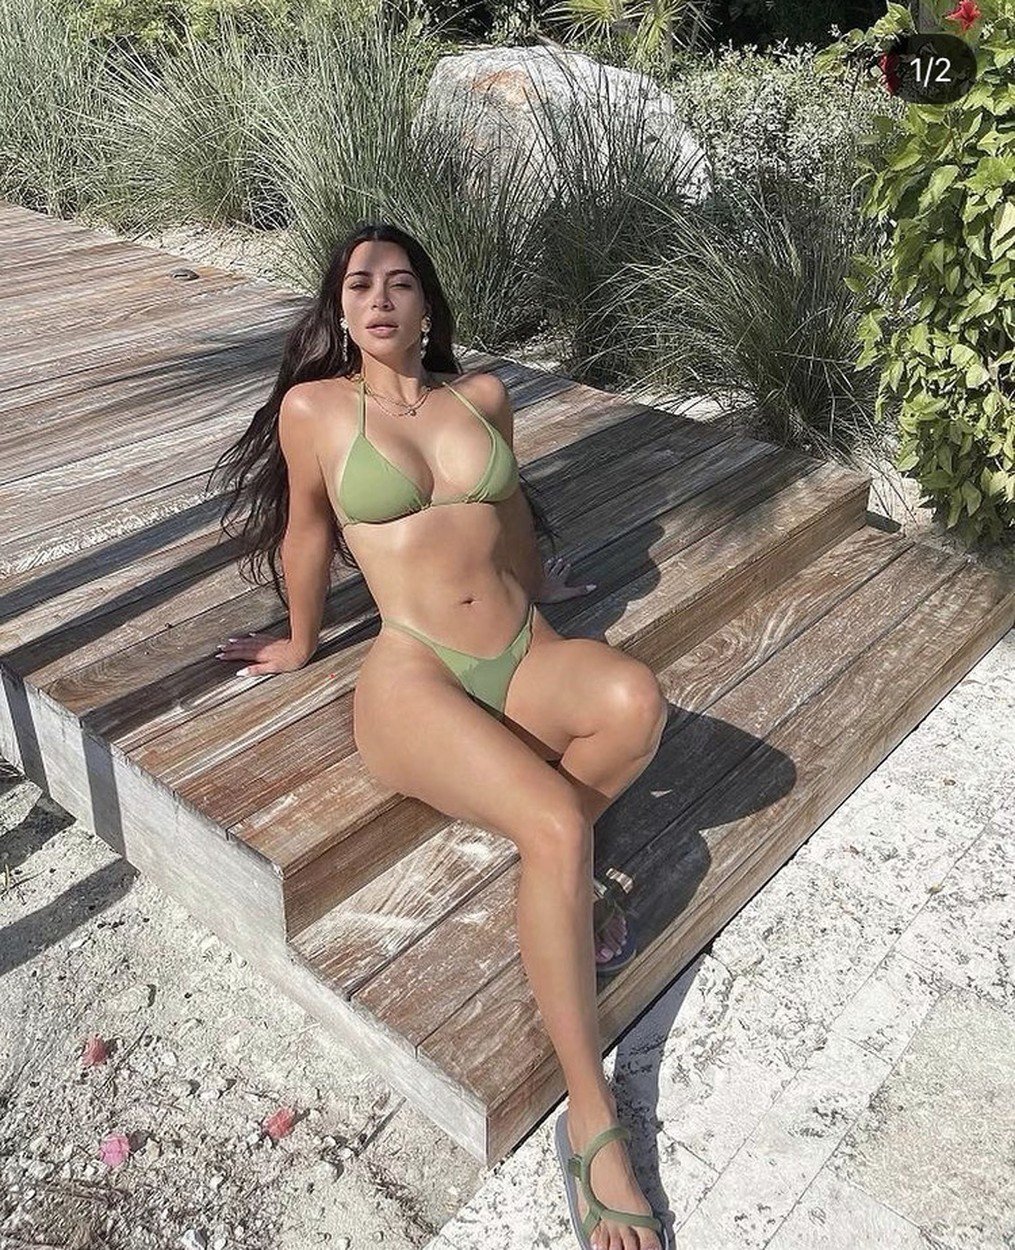   Kim Kardashian West